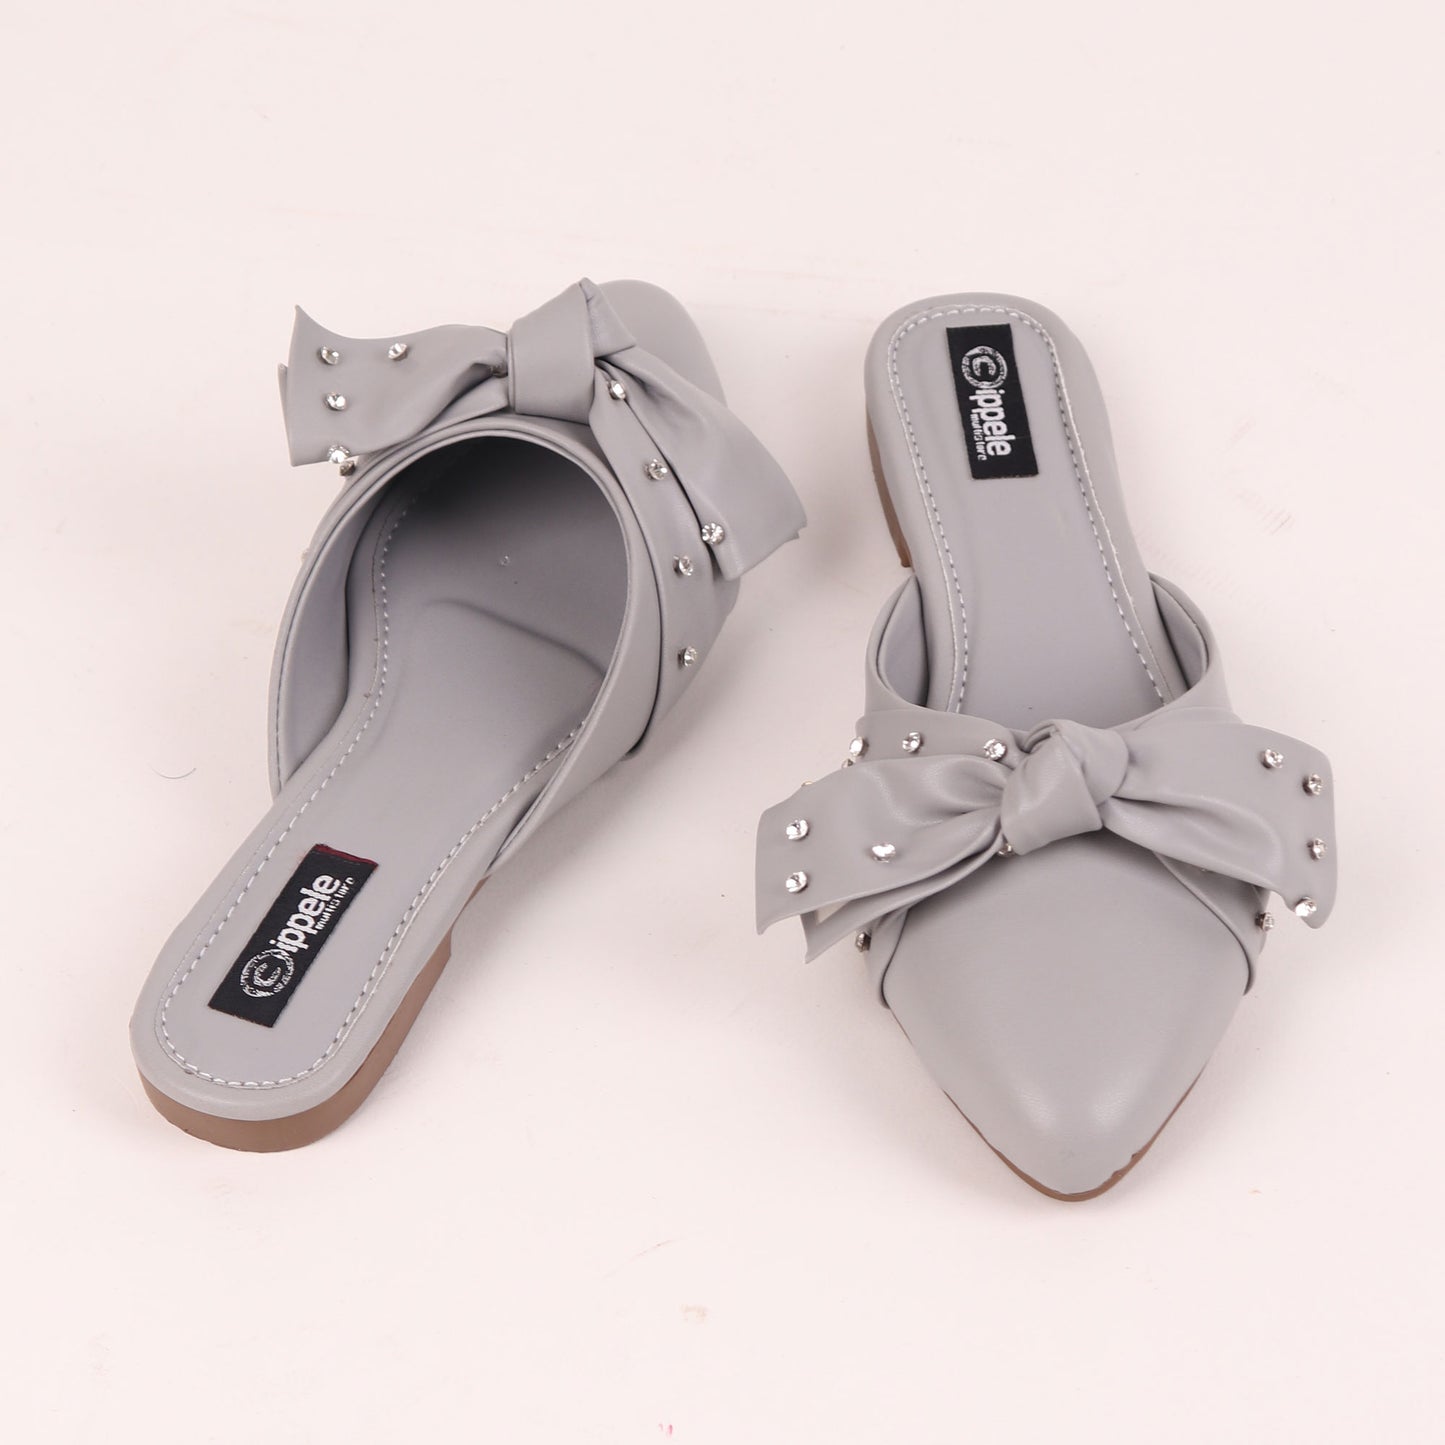 Foot Wear,The Kitten Bow Flats in Grey - Cippele Multi Store